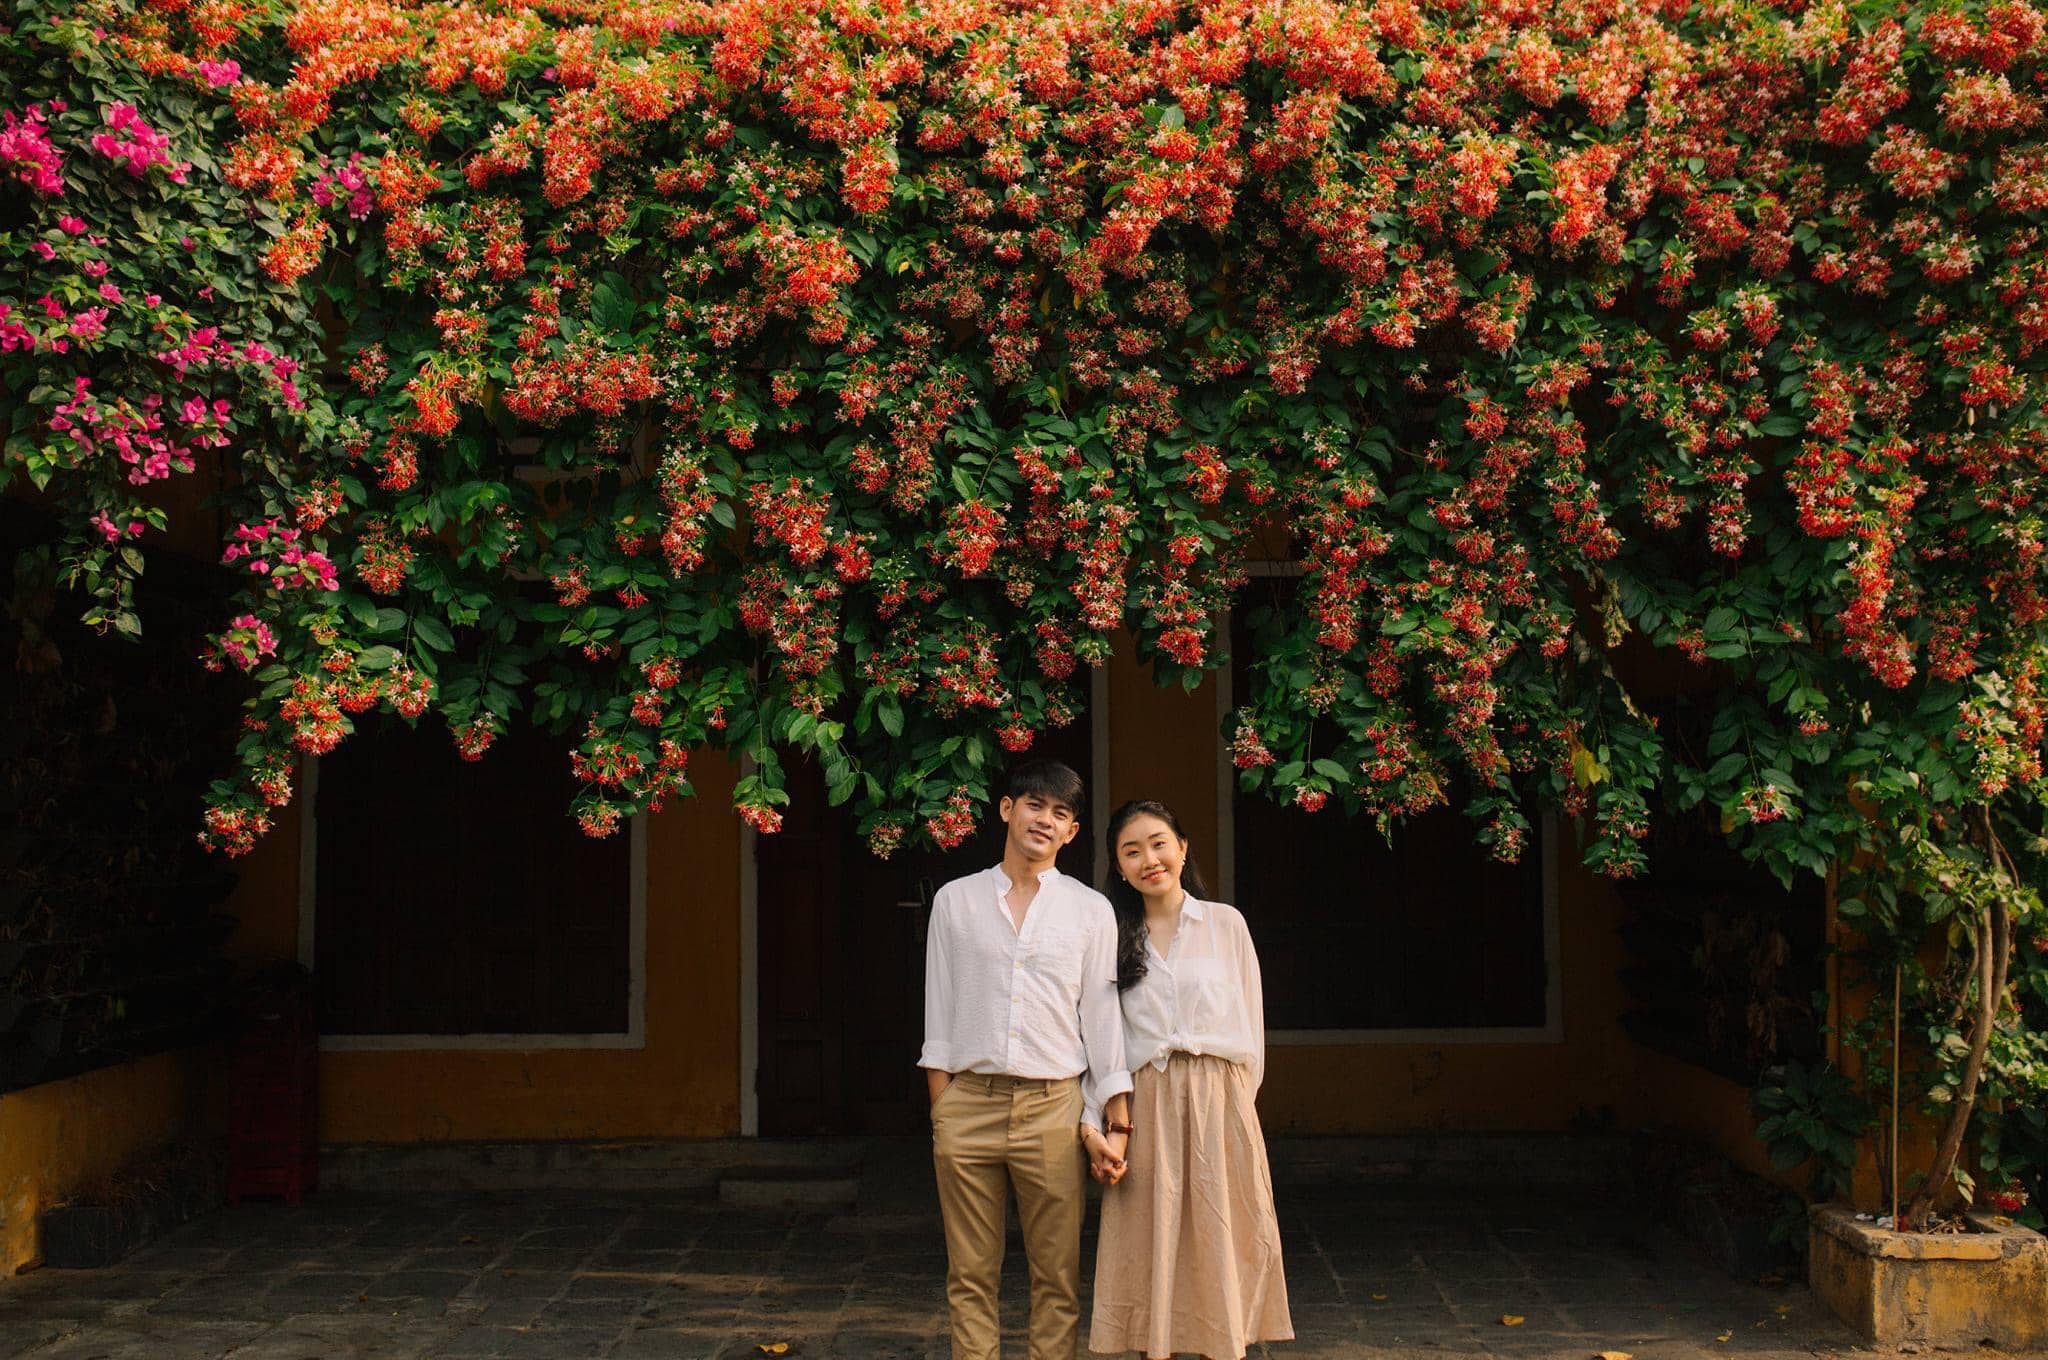 Lãng mạn phố cổ Hội An qua bộ ảnh couple đẹp như mơ của photographer Bùi Huy Khang 2